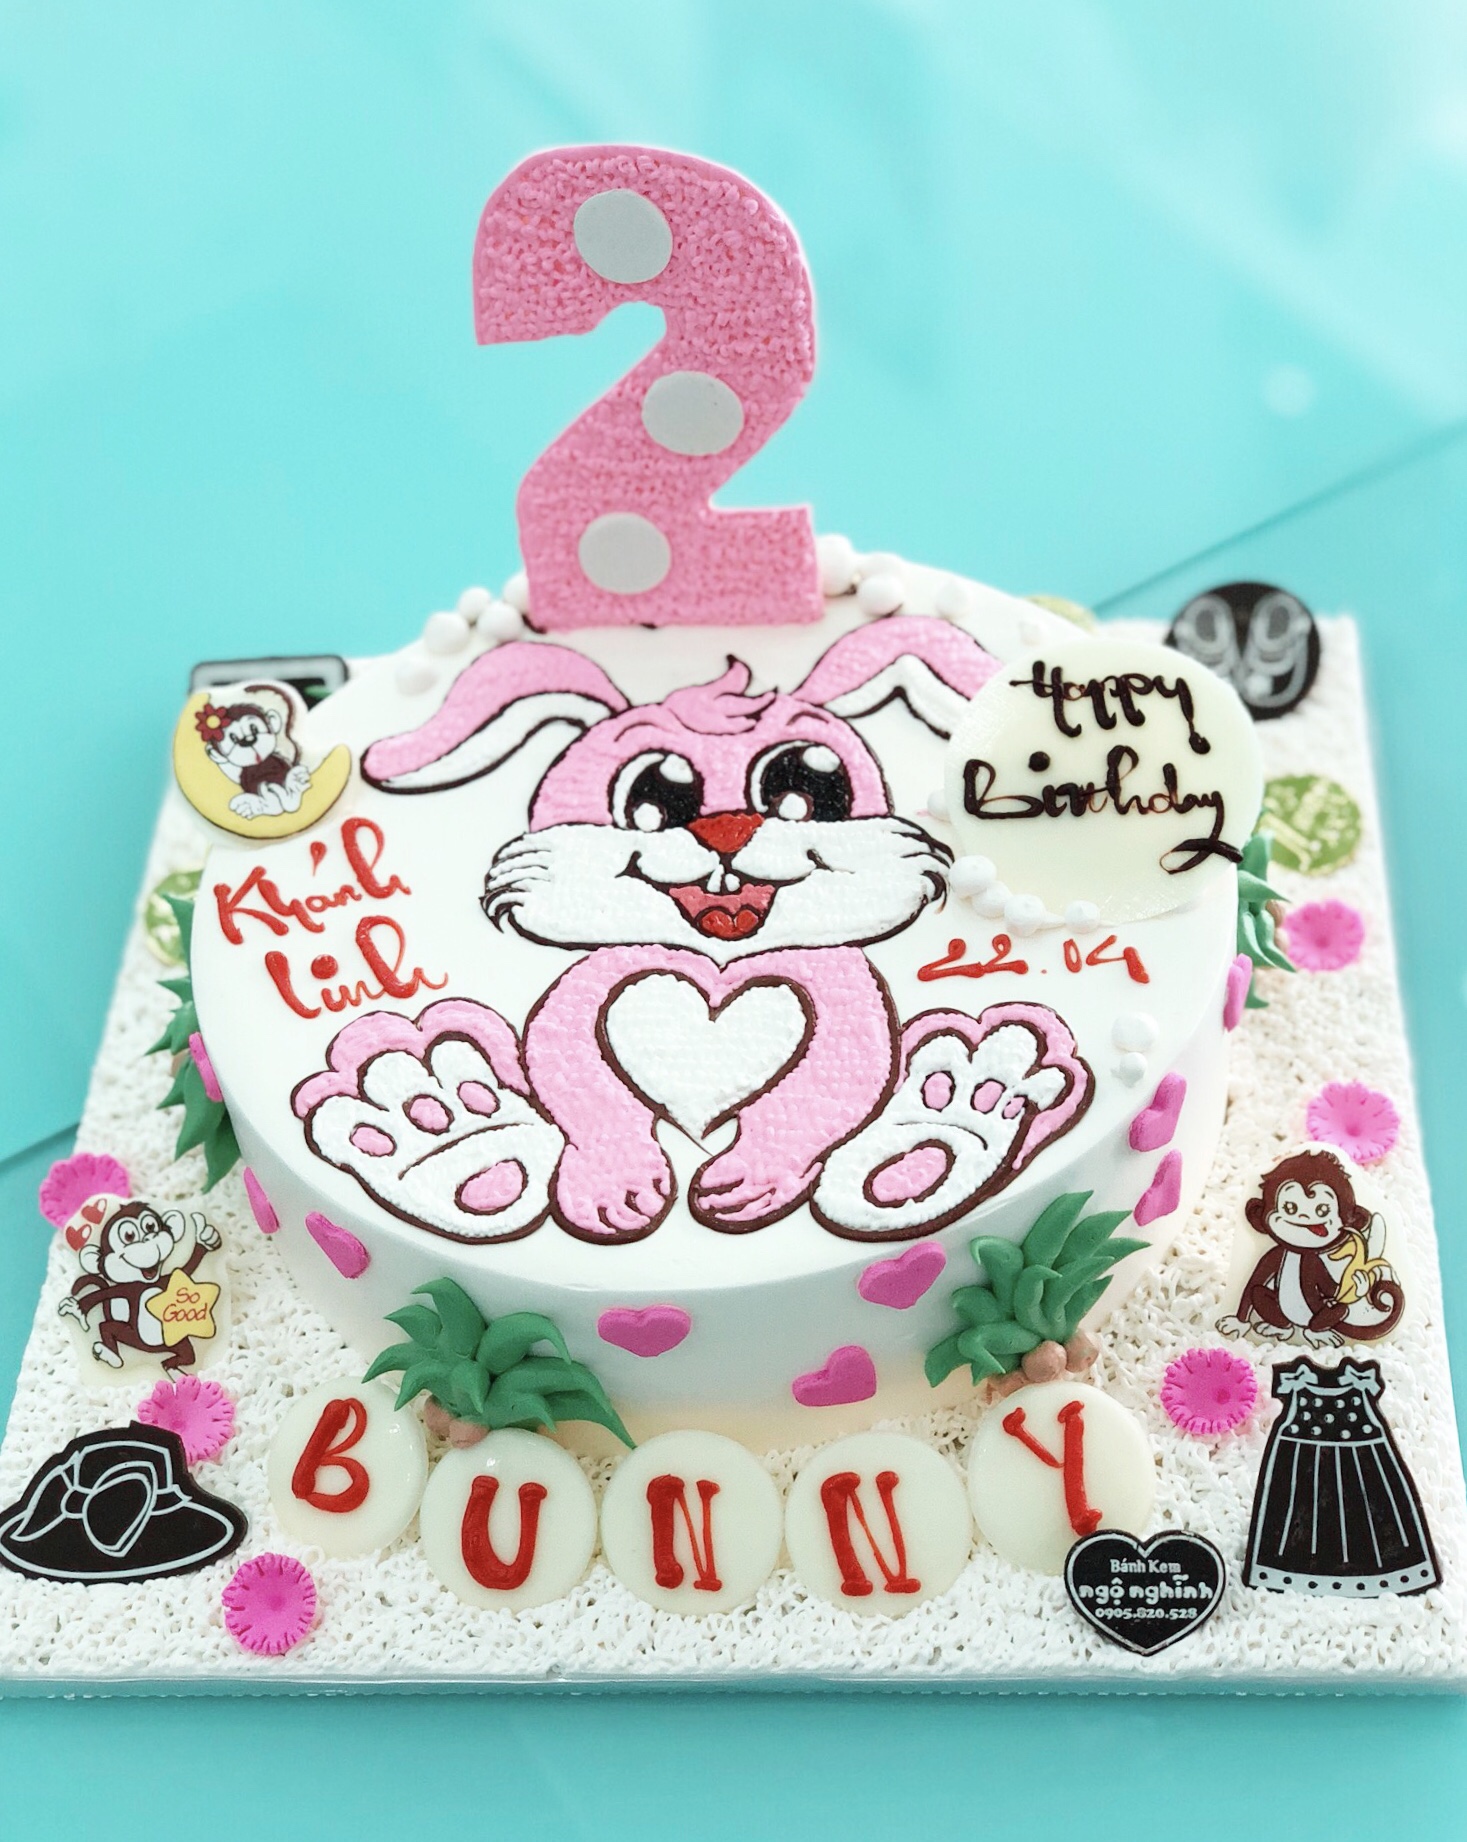 Một bức hình hoàn hảo về chú thỏ trên bánh sinh nhật sẽ làm cho bạn muốn đi tìm một chiếc bánh ngọt ngào giống như vậy để chúc mừng sinh nhật của bạn, hãy cùng đến và xem thử.